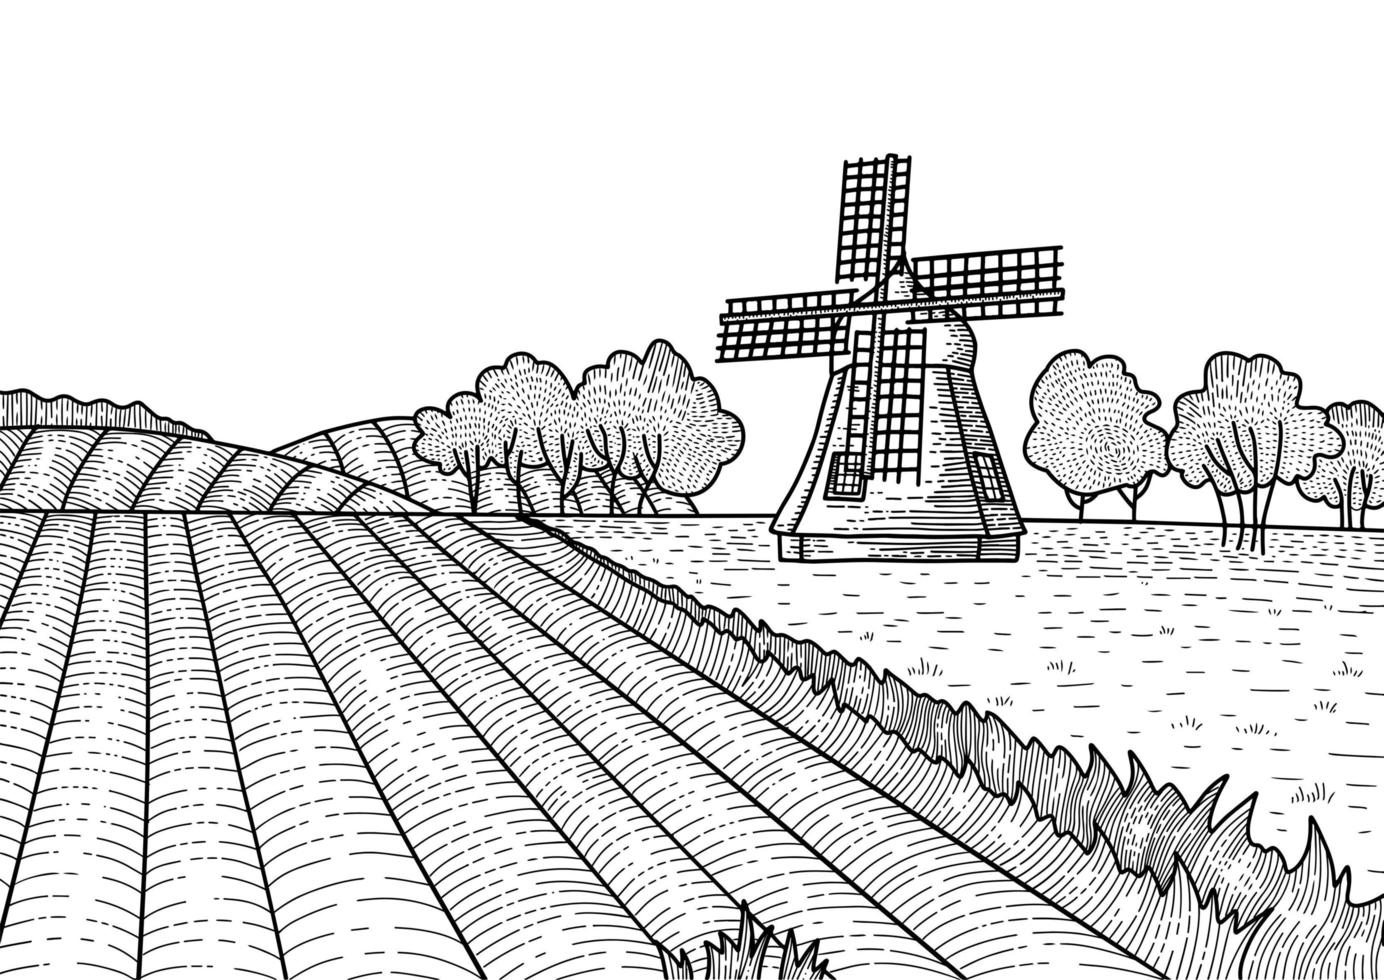 contorno tracejada da paisagem de verão com moinho de vento. paisagem rural holandesa com moinho e campo. padaria, produção agrícola orgânica, eco food. desenho gravado vintage mão desenhada de vetor. vetor